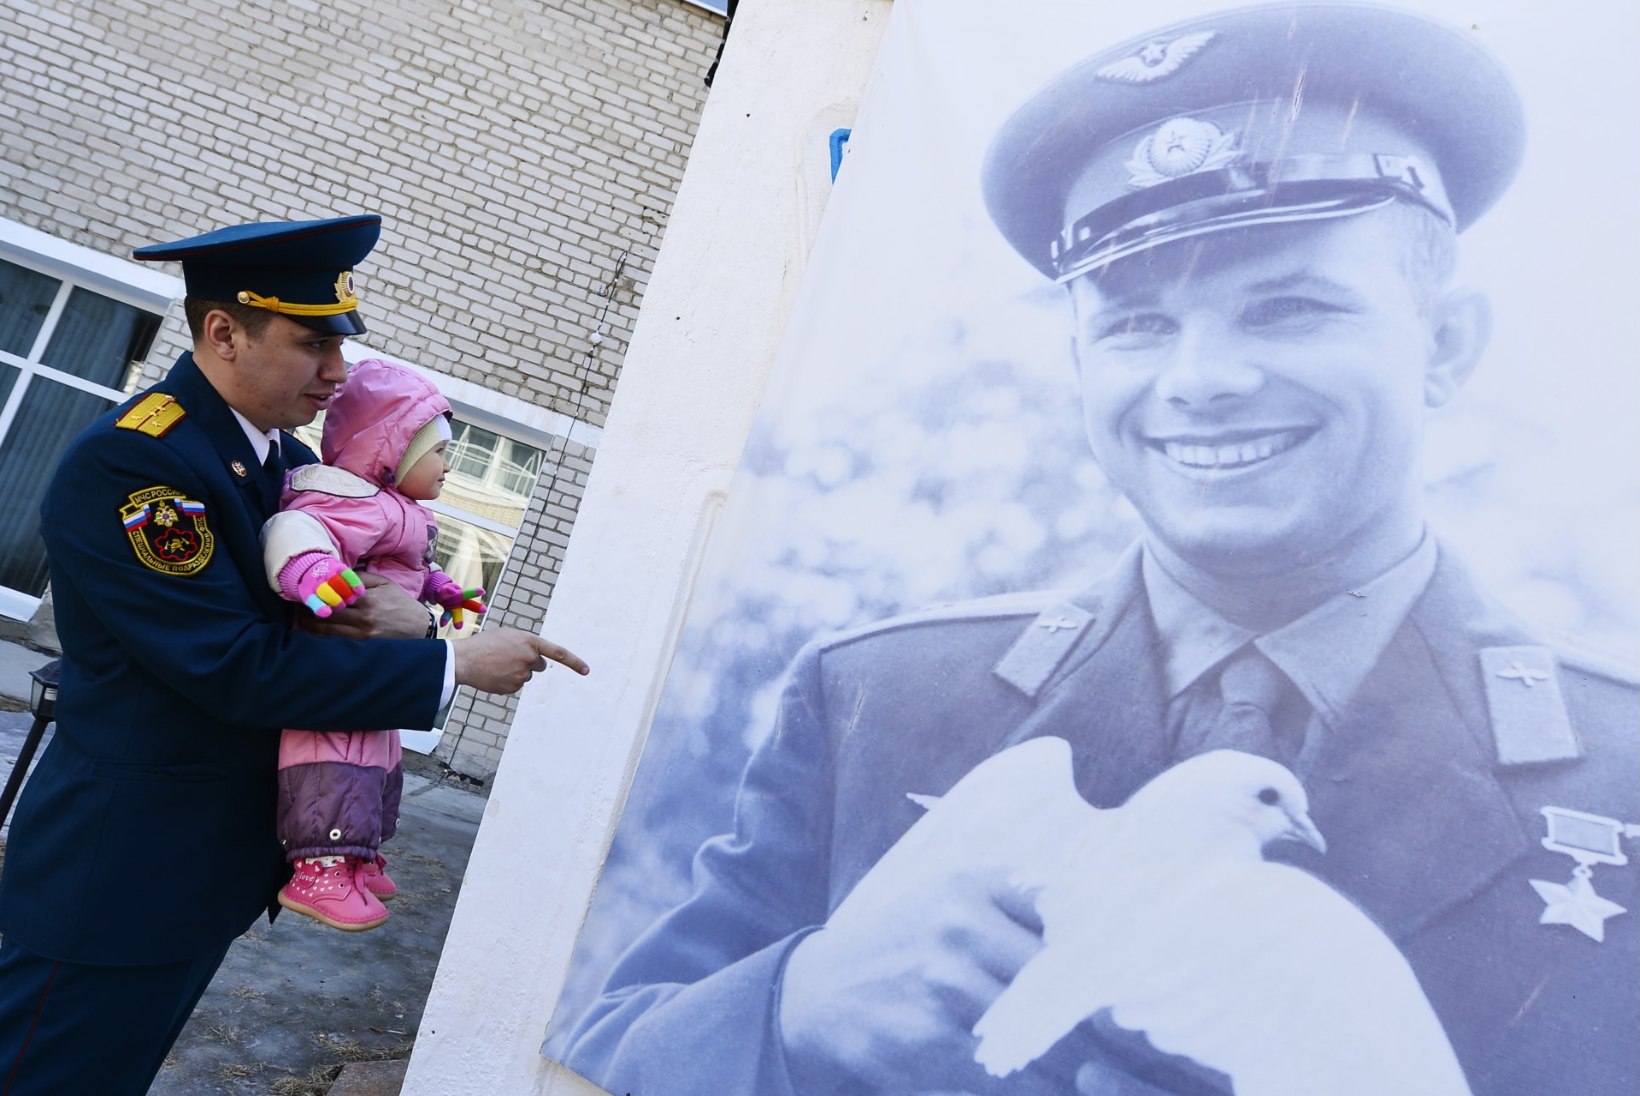 GALERII | Venemaa tähistab: 55 aastat Gagarini kosmoselennust